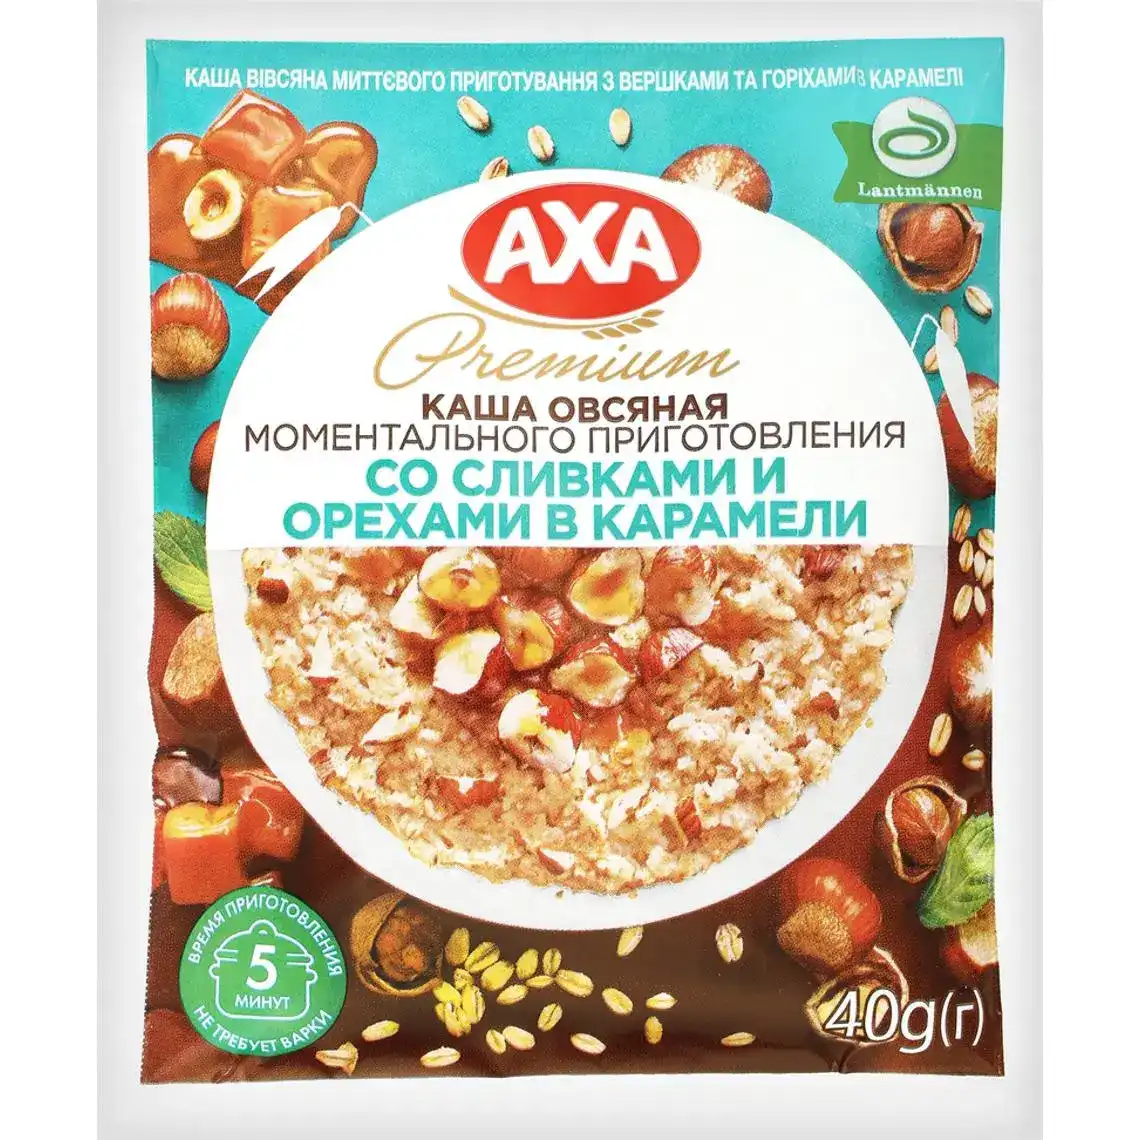 Каша вівсяна миттєвого приготування Axa Premium з вершками і горіхами в карамелі 40 г